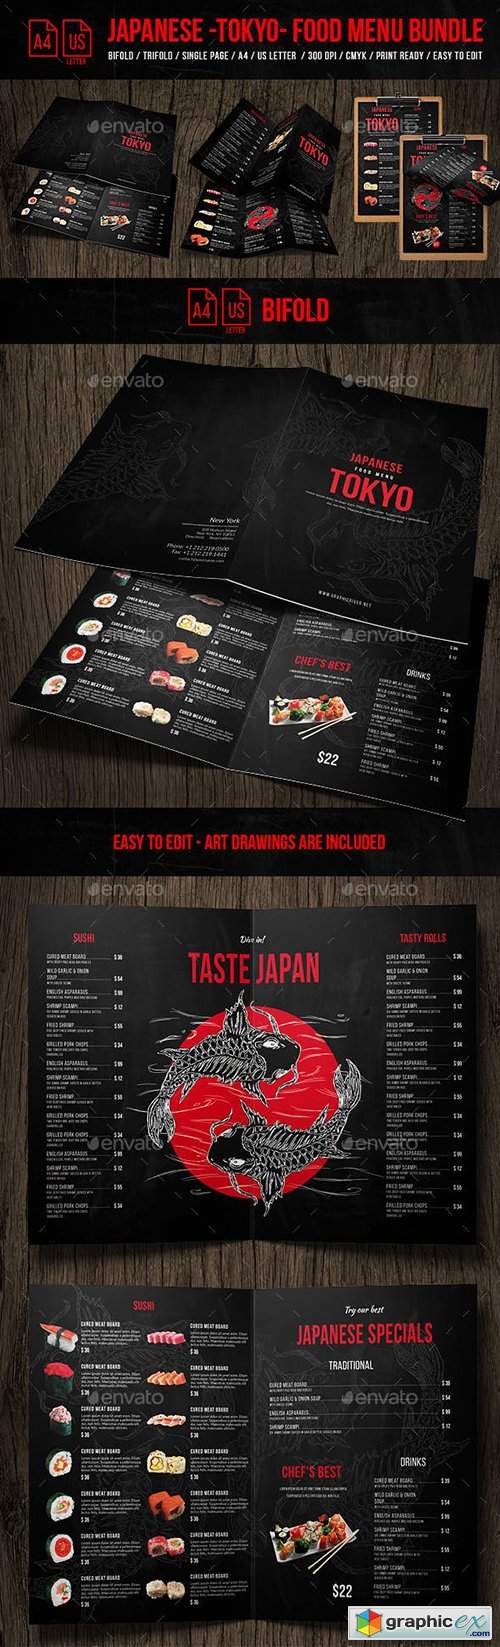 Japanese Tokyo Food Menu Bundle - A4 & US Letter Formats